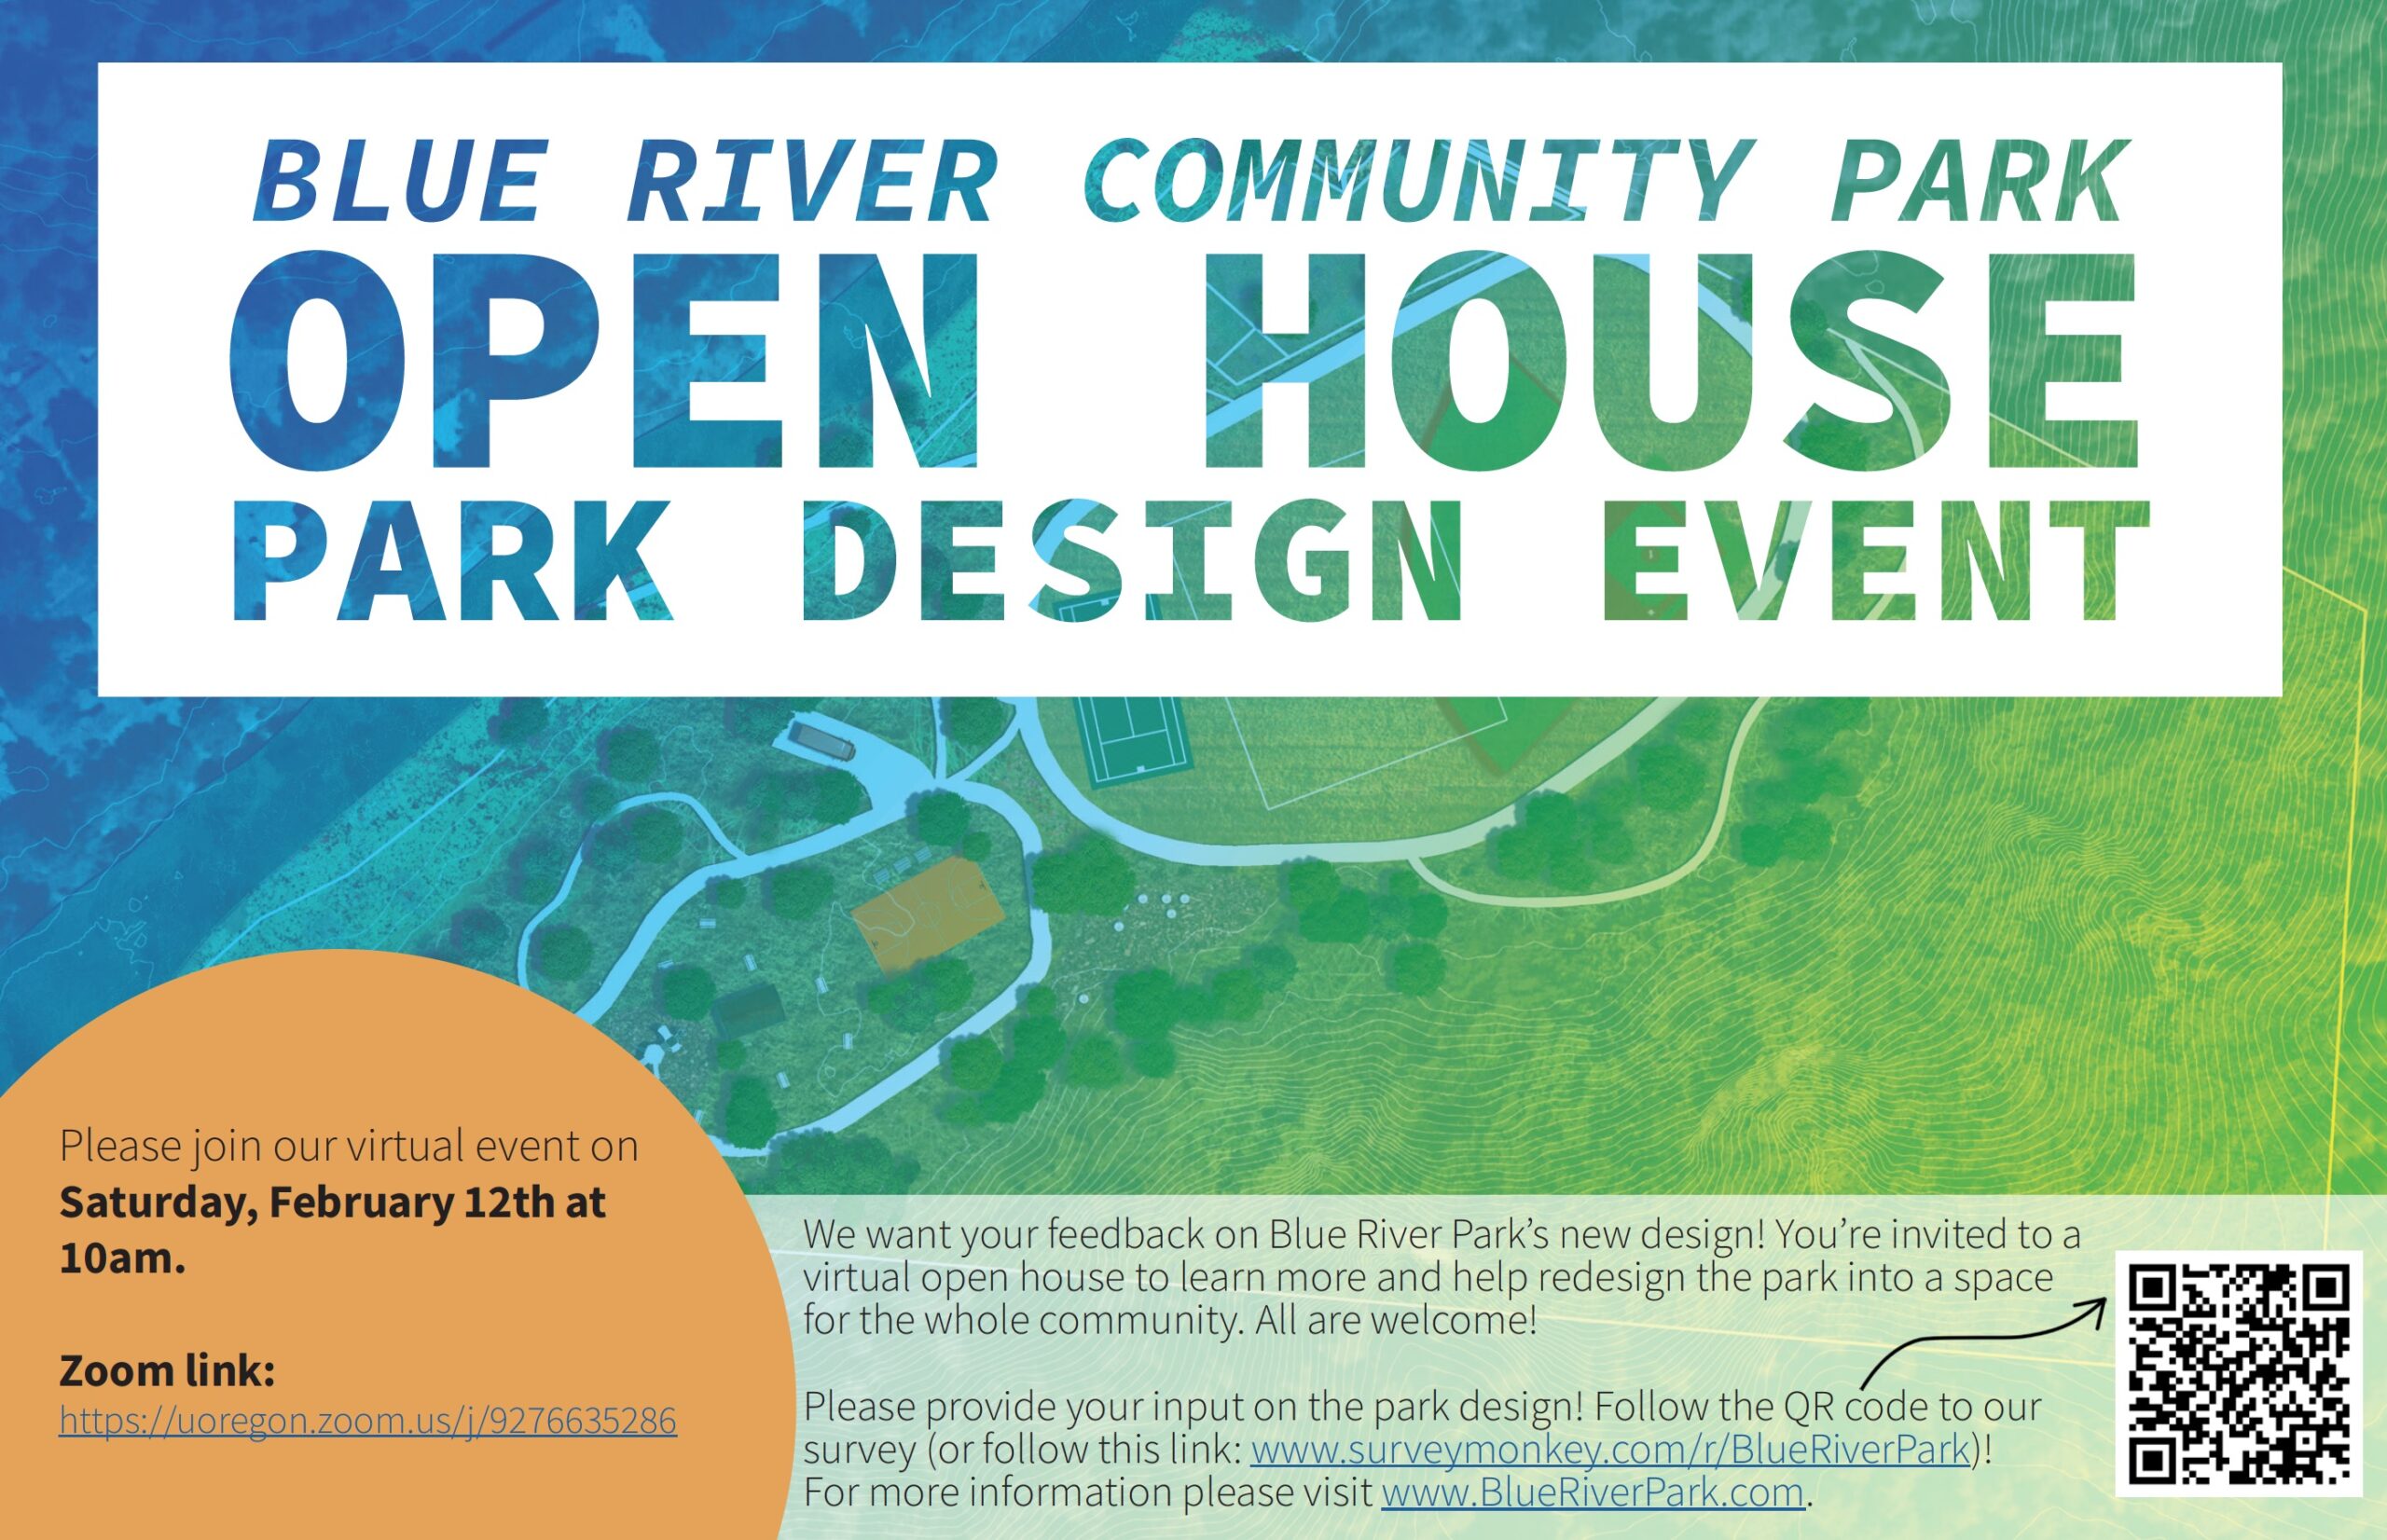 BR Park Design Event – Open House!